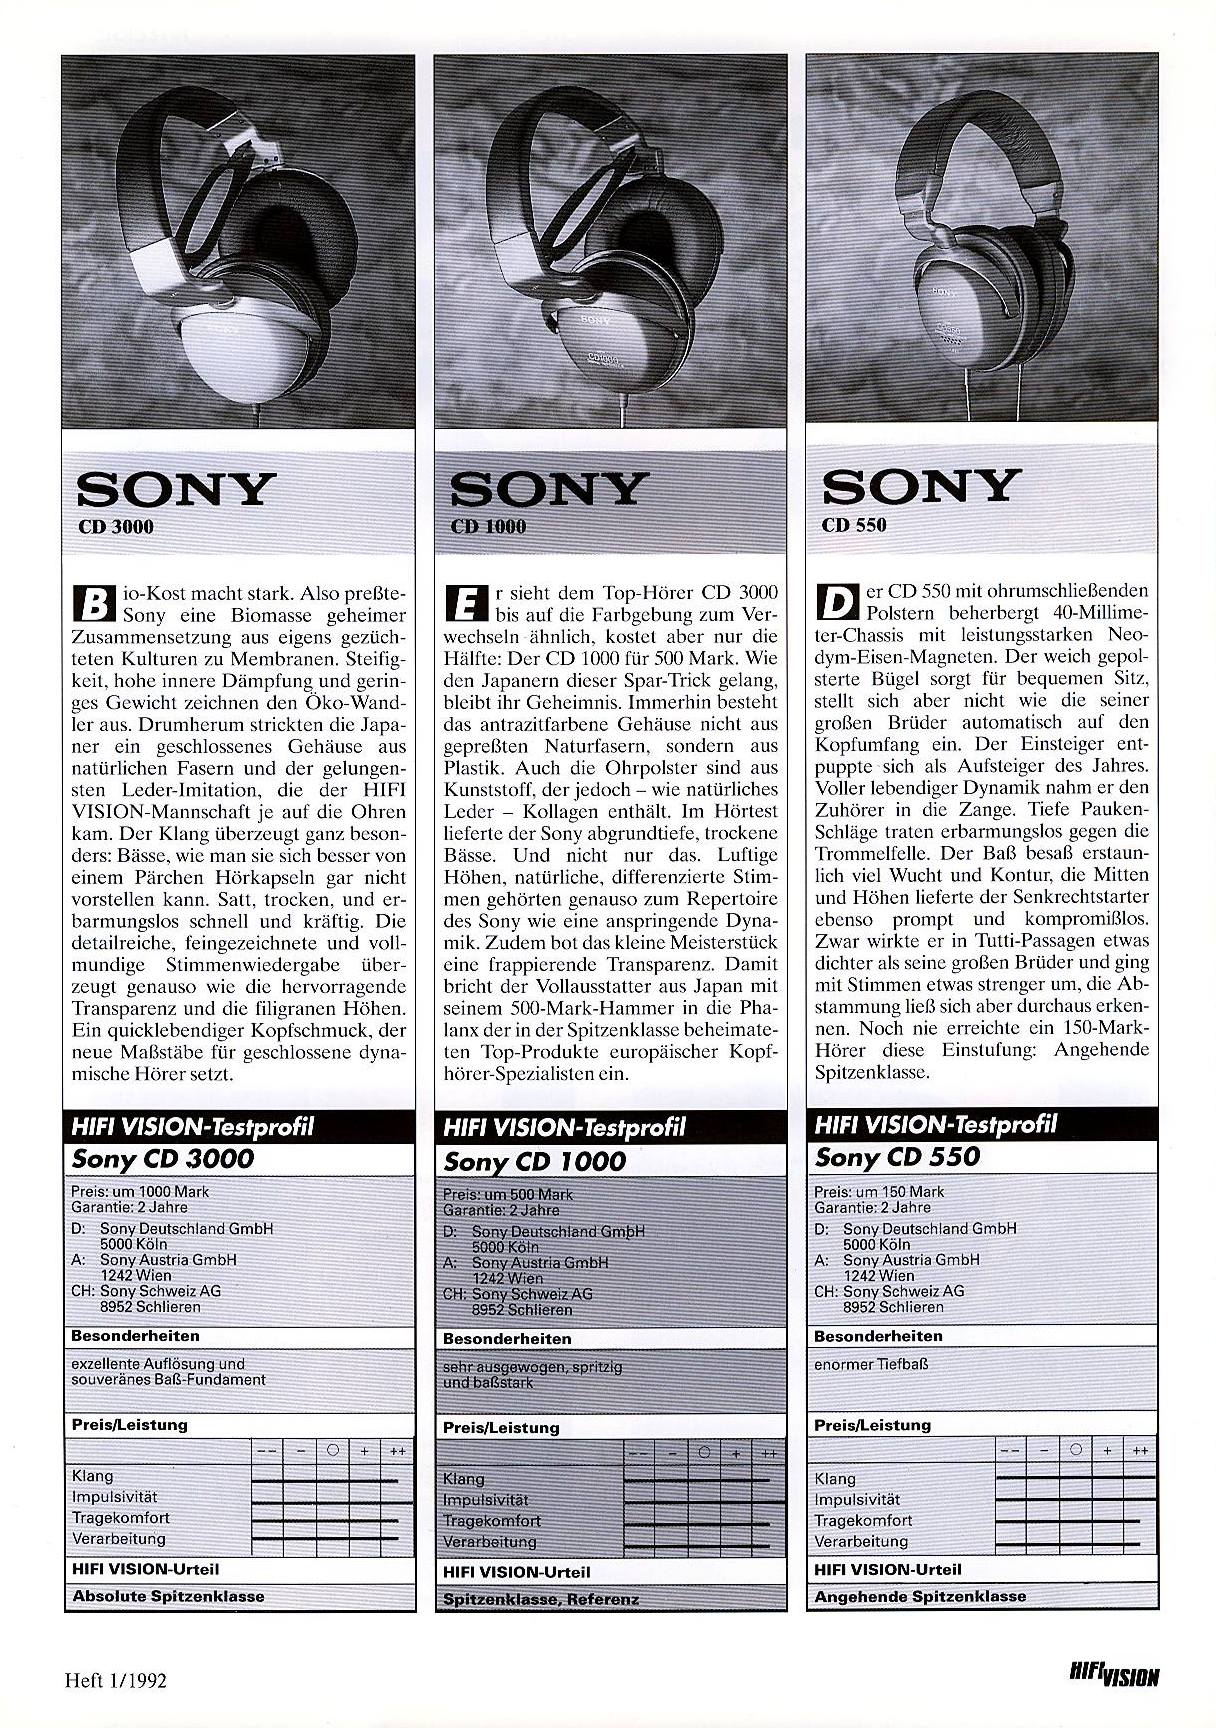 Sony MDR-CD 550-1000-3000-Prospekt-1992.jpg